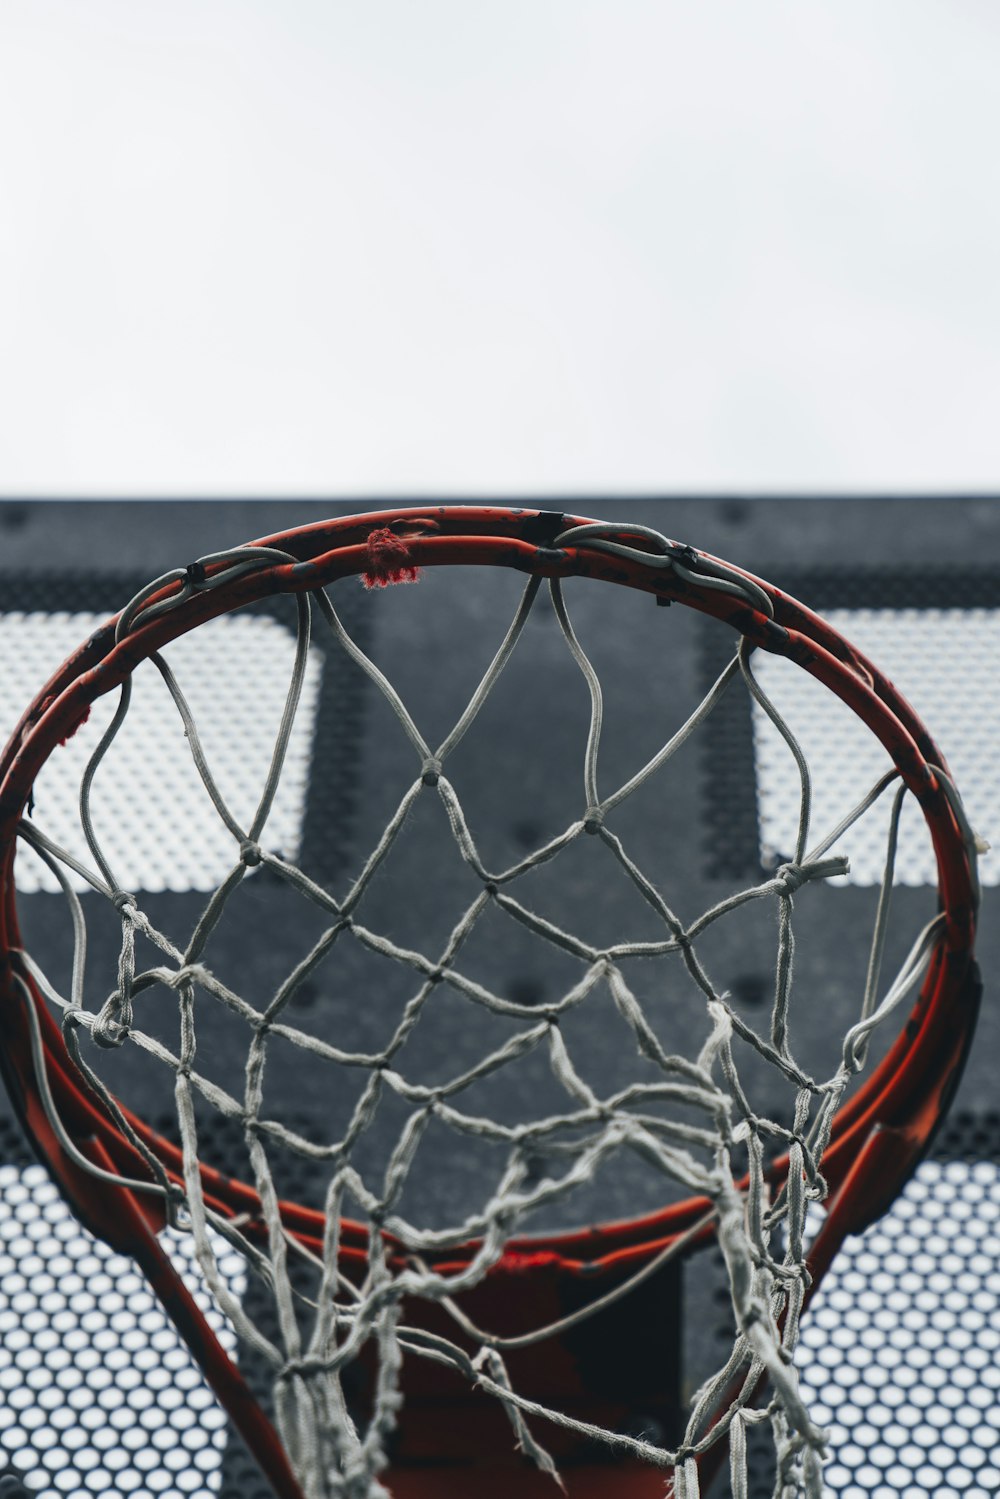 Fotografia de foco seletivo do anel de basquete vermelho